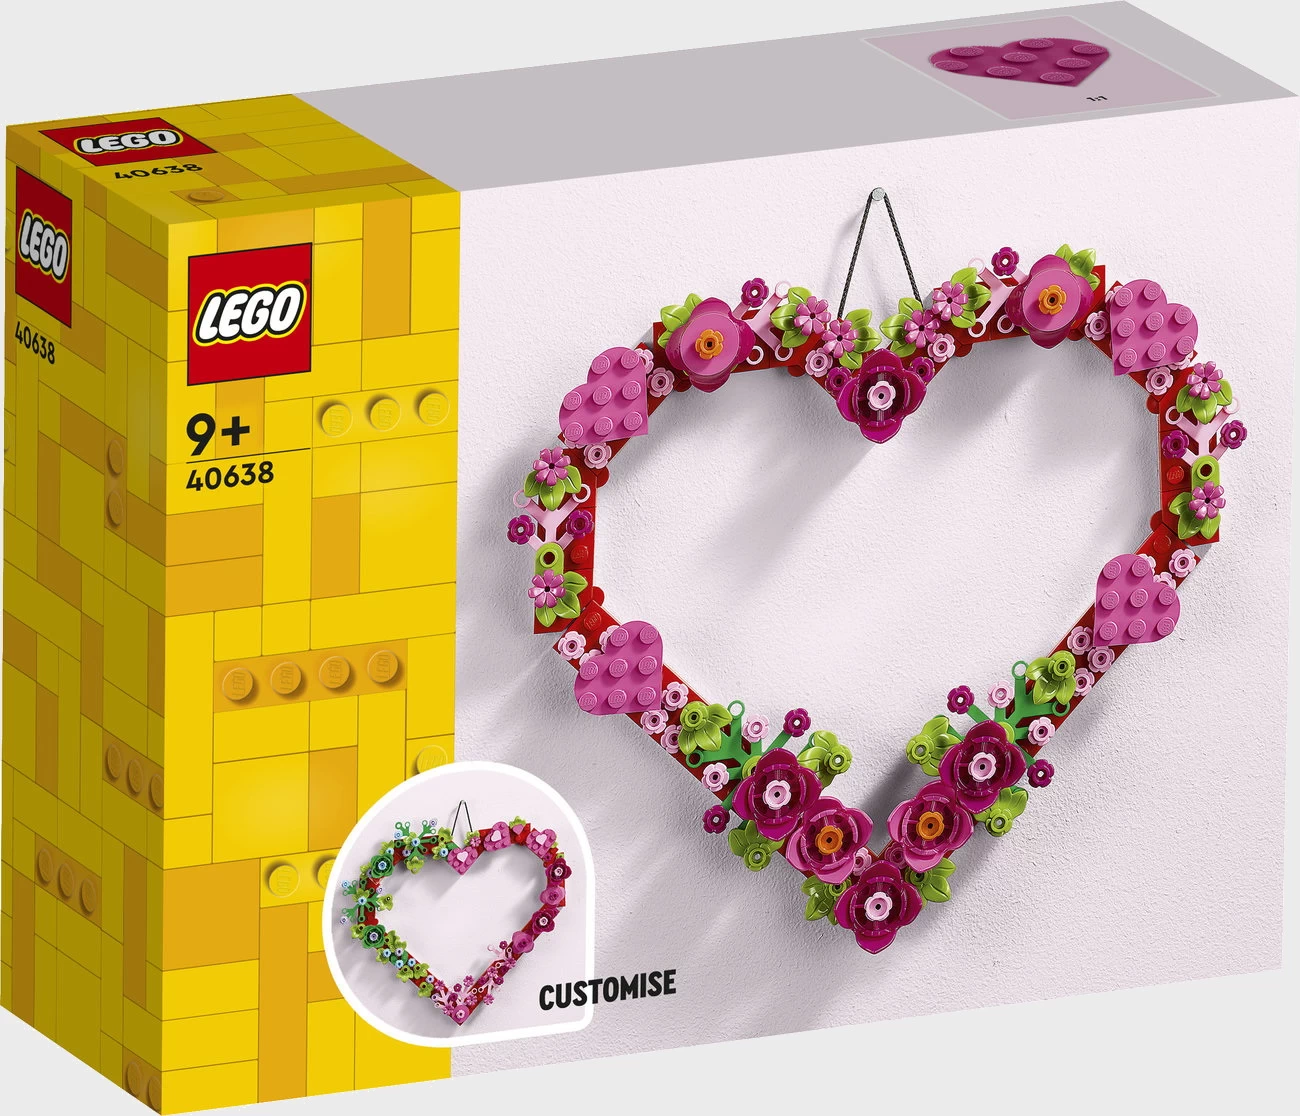 LEGO Iconic 40638 - Herz-Deko